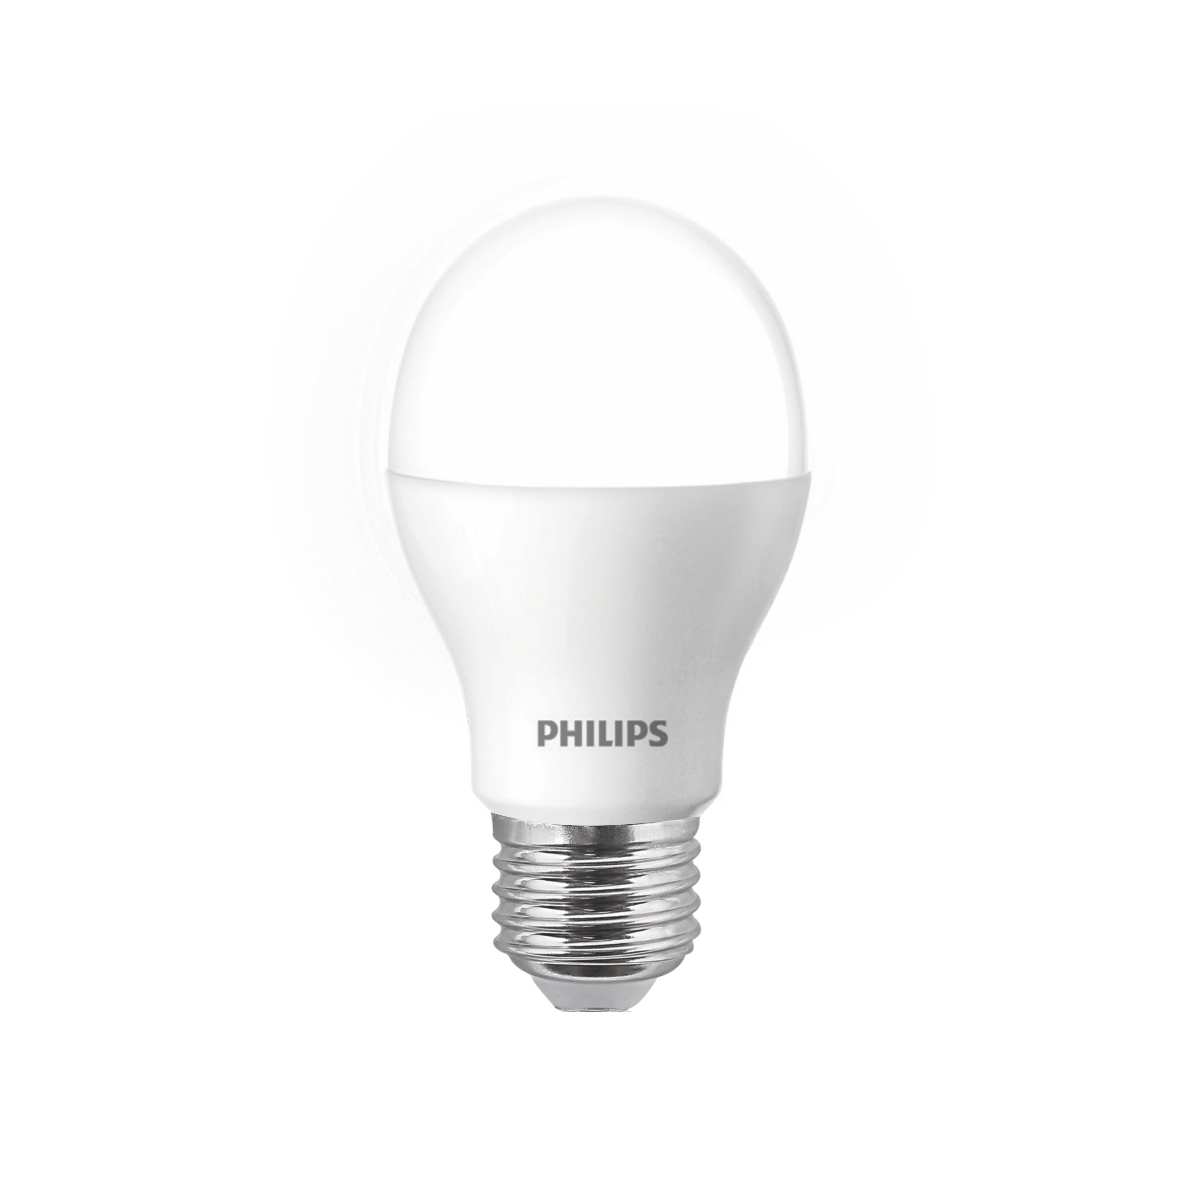 Philips AceBright LED Bulb